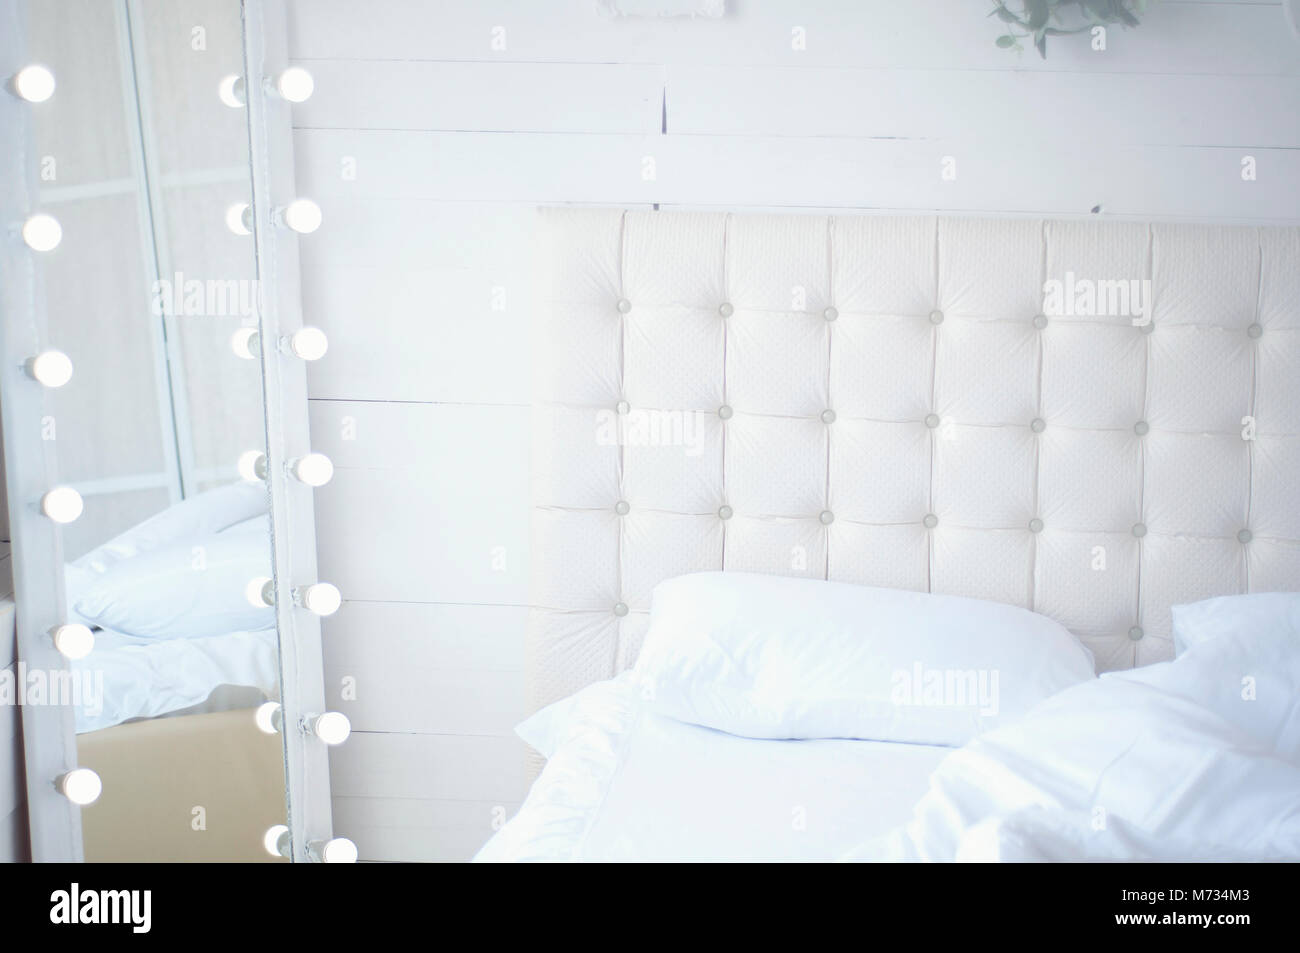 Strauß Blumen auf dem Bett und einem Spiegel mit Glühlampen Stockfoto